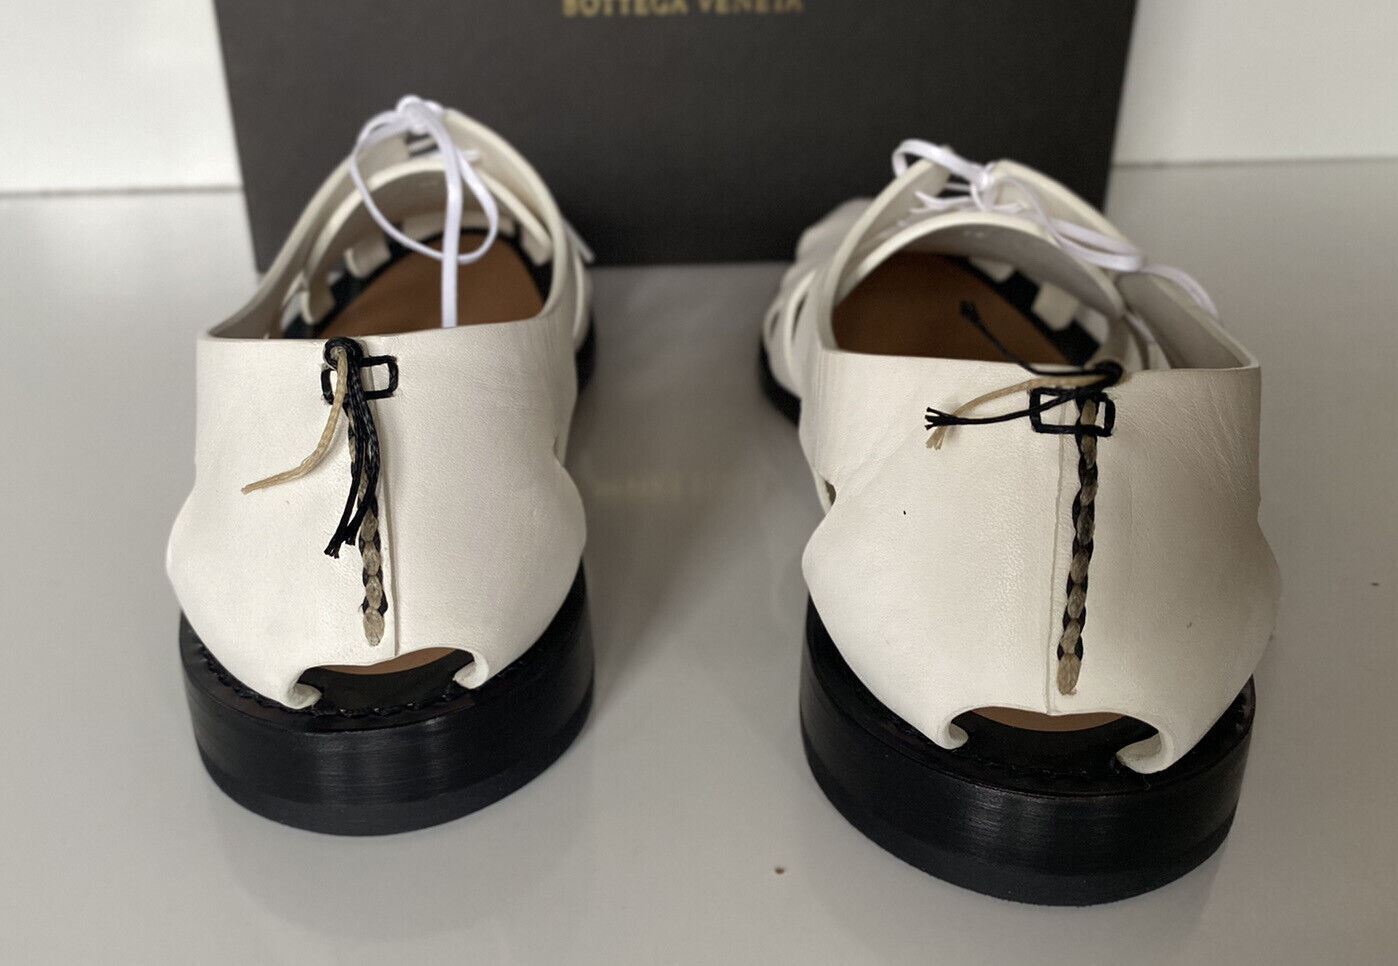 NIB Bottega Veneta Herren Derby Leder Weiße Schuhe Ausschnittdetails 8,5 US 574829 